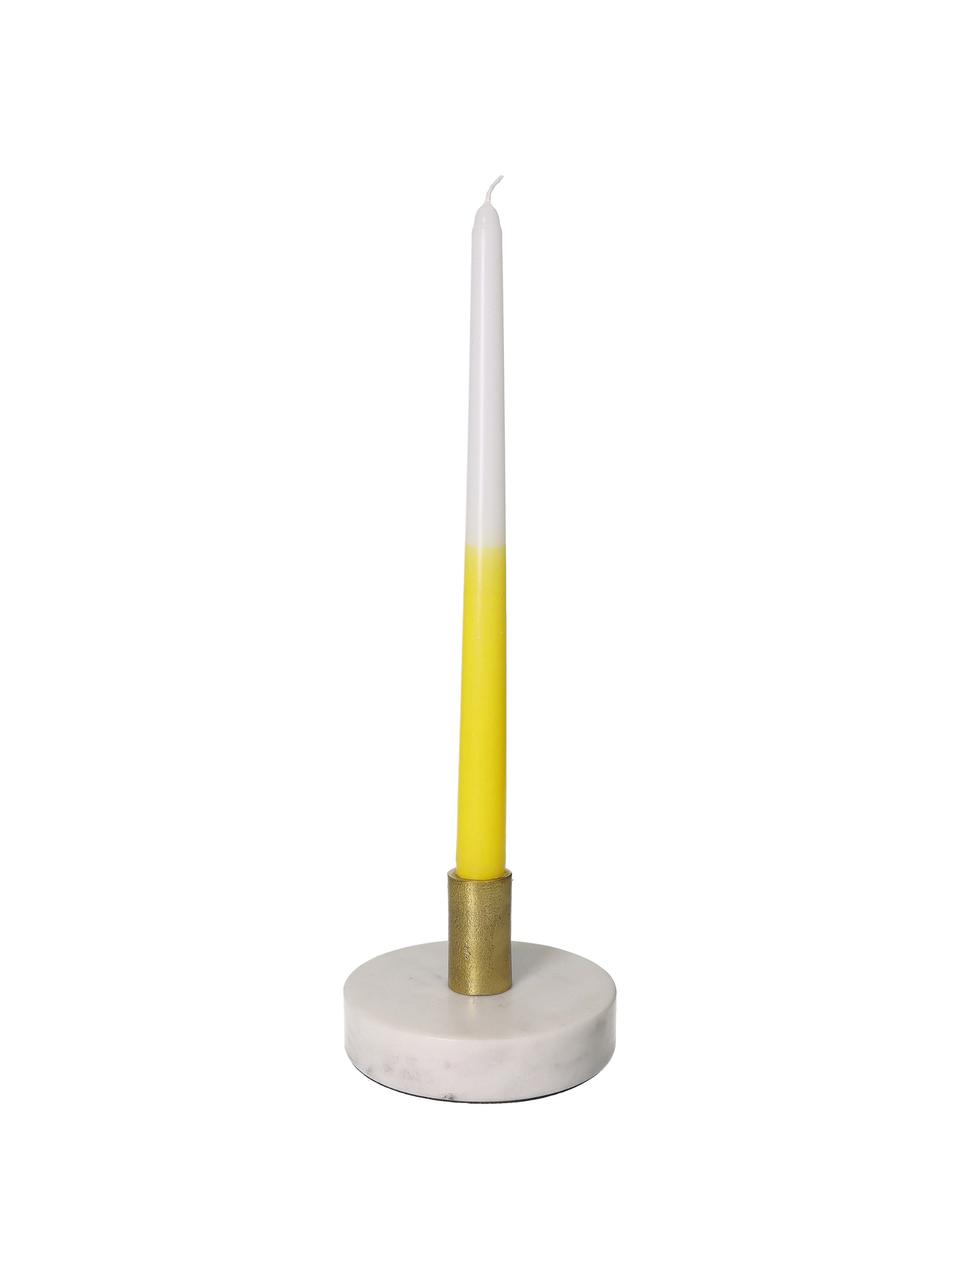 Chandelle jaune/blanc Dubli, 4 pièces, Cire, Jaune, blanc, Ø 2 x haut. 31 cm